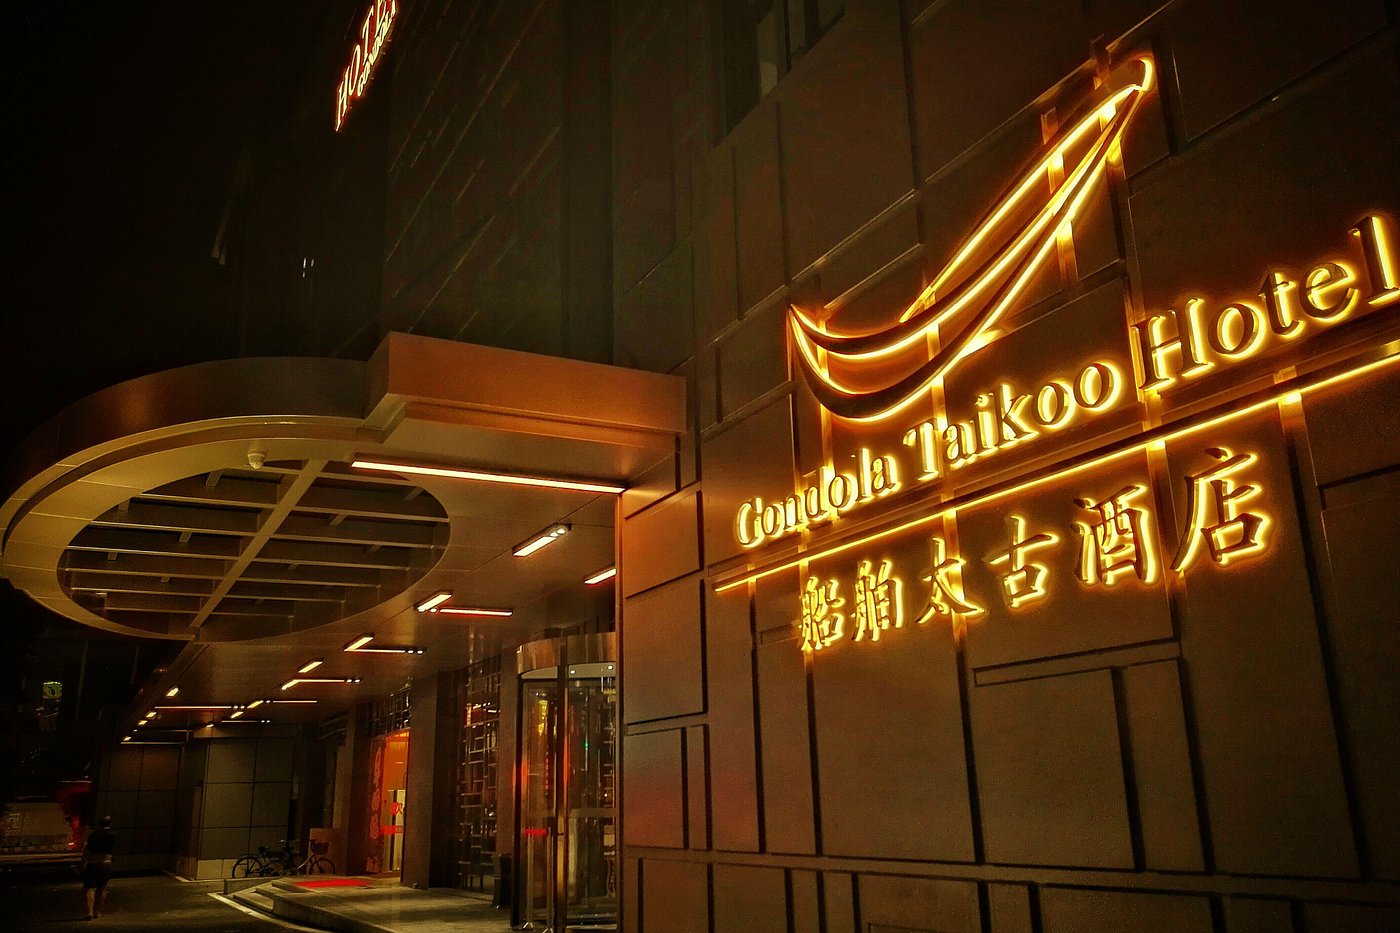 船舶太古酒店 (廣州市) - Gondola Taikoo Hotel - 1則旅客評論及格價